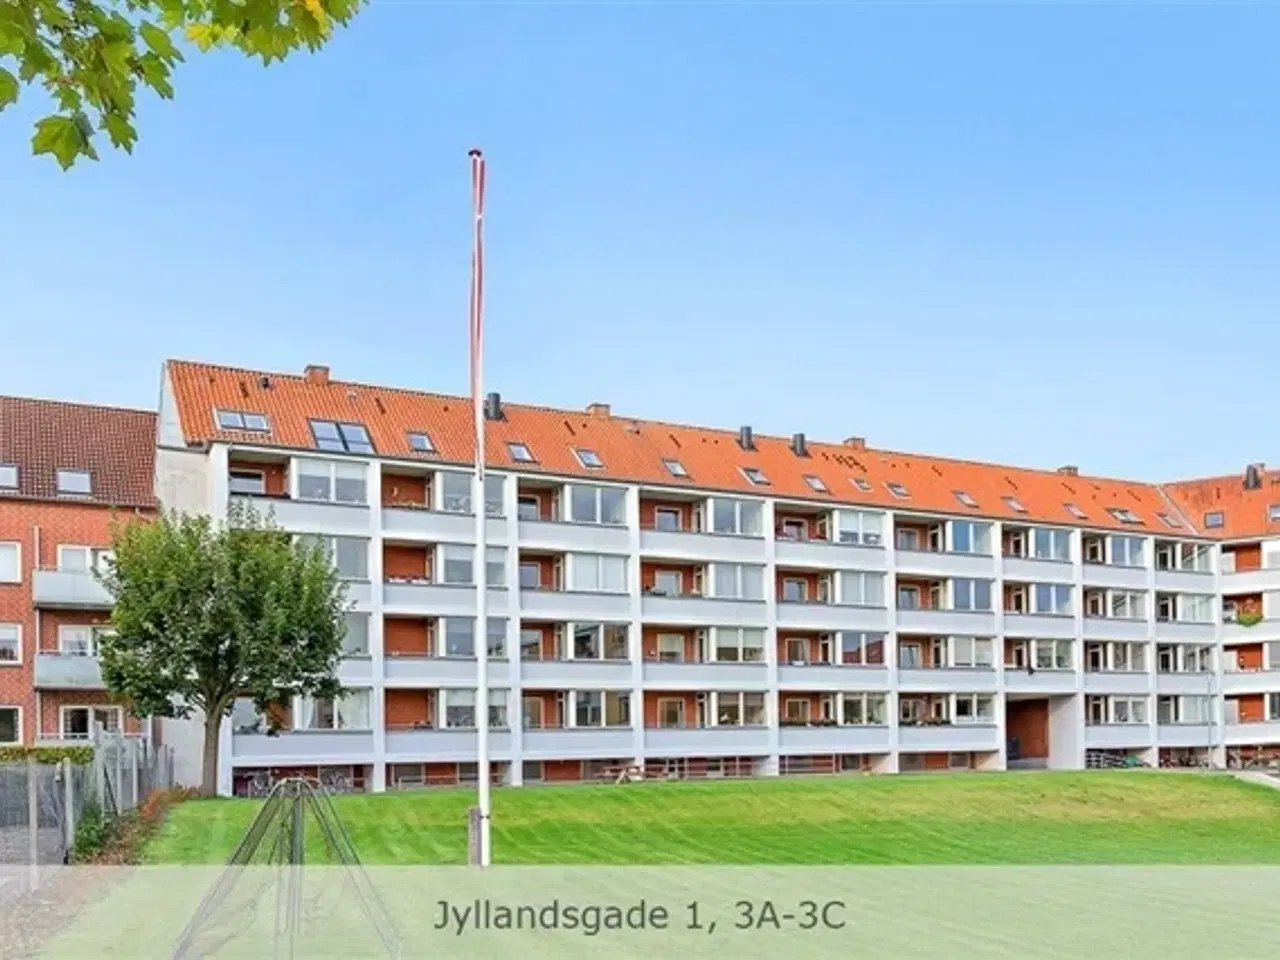 Billede 1 - Jyllandsgade, 72 m2, 3 værelser, 5.247 kr., Randers C, Aarhus